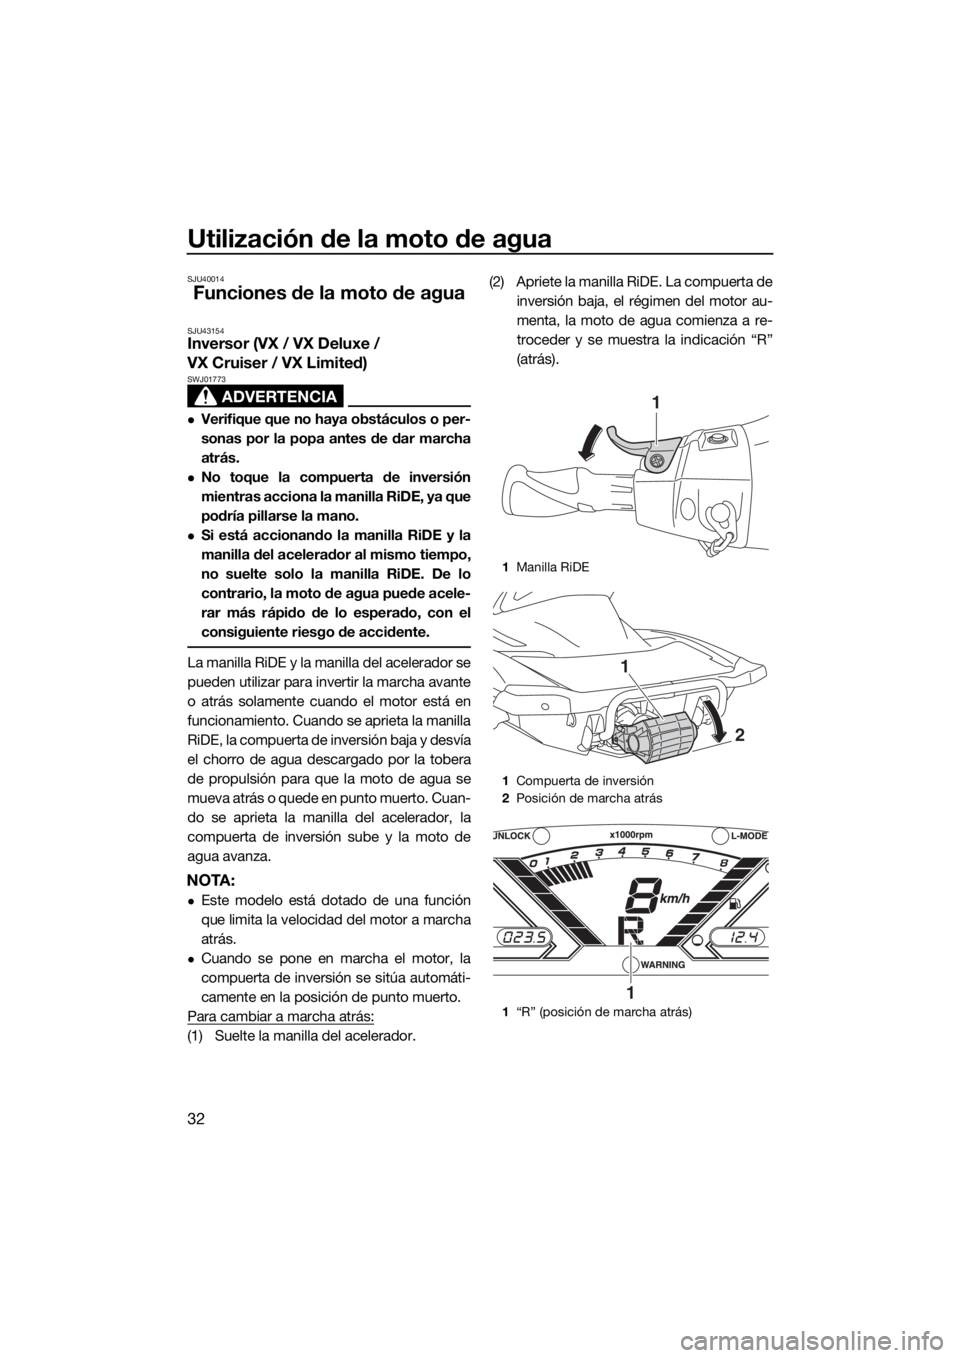 YAMAHA VX-C 2020  Manuale de Empleo (in Spanish) Utilización de la moto de agua
32
SJU40014
Funciones de la moto de agua
SJU43154Inversor (VX / VX Deluxe / 
VX Cruiser / VX Limited)
ADVERTENCIA
SWJ01773
Verifique que no haya obstáculos o per-
s